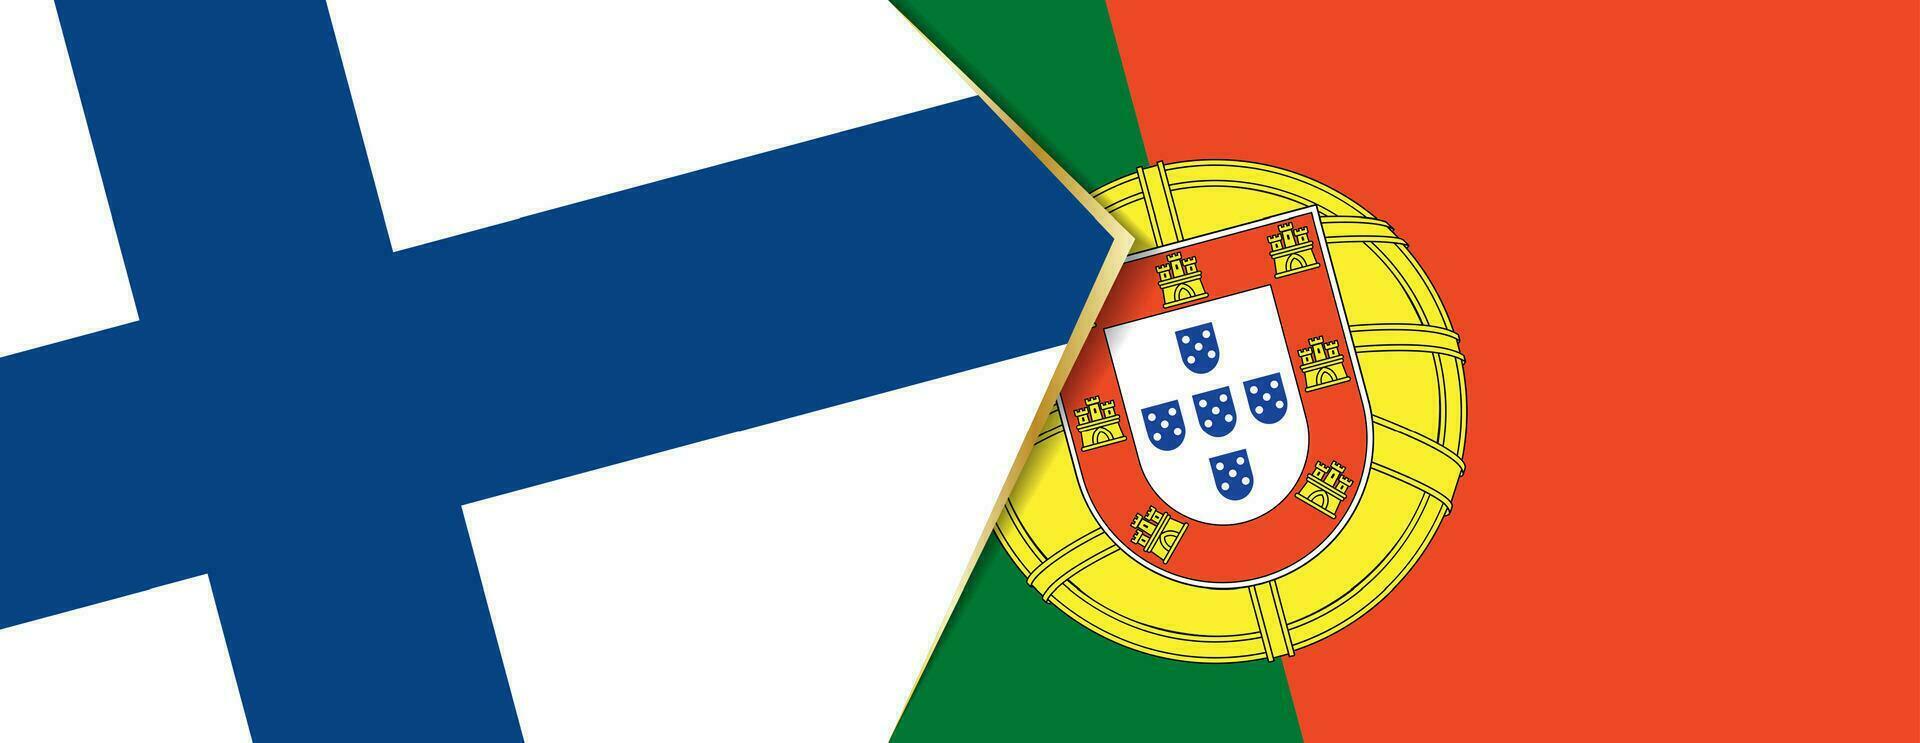 Finnland und Portugal Flaggen, zwei Vektor Flaggen.